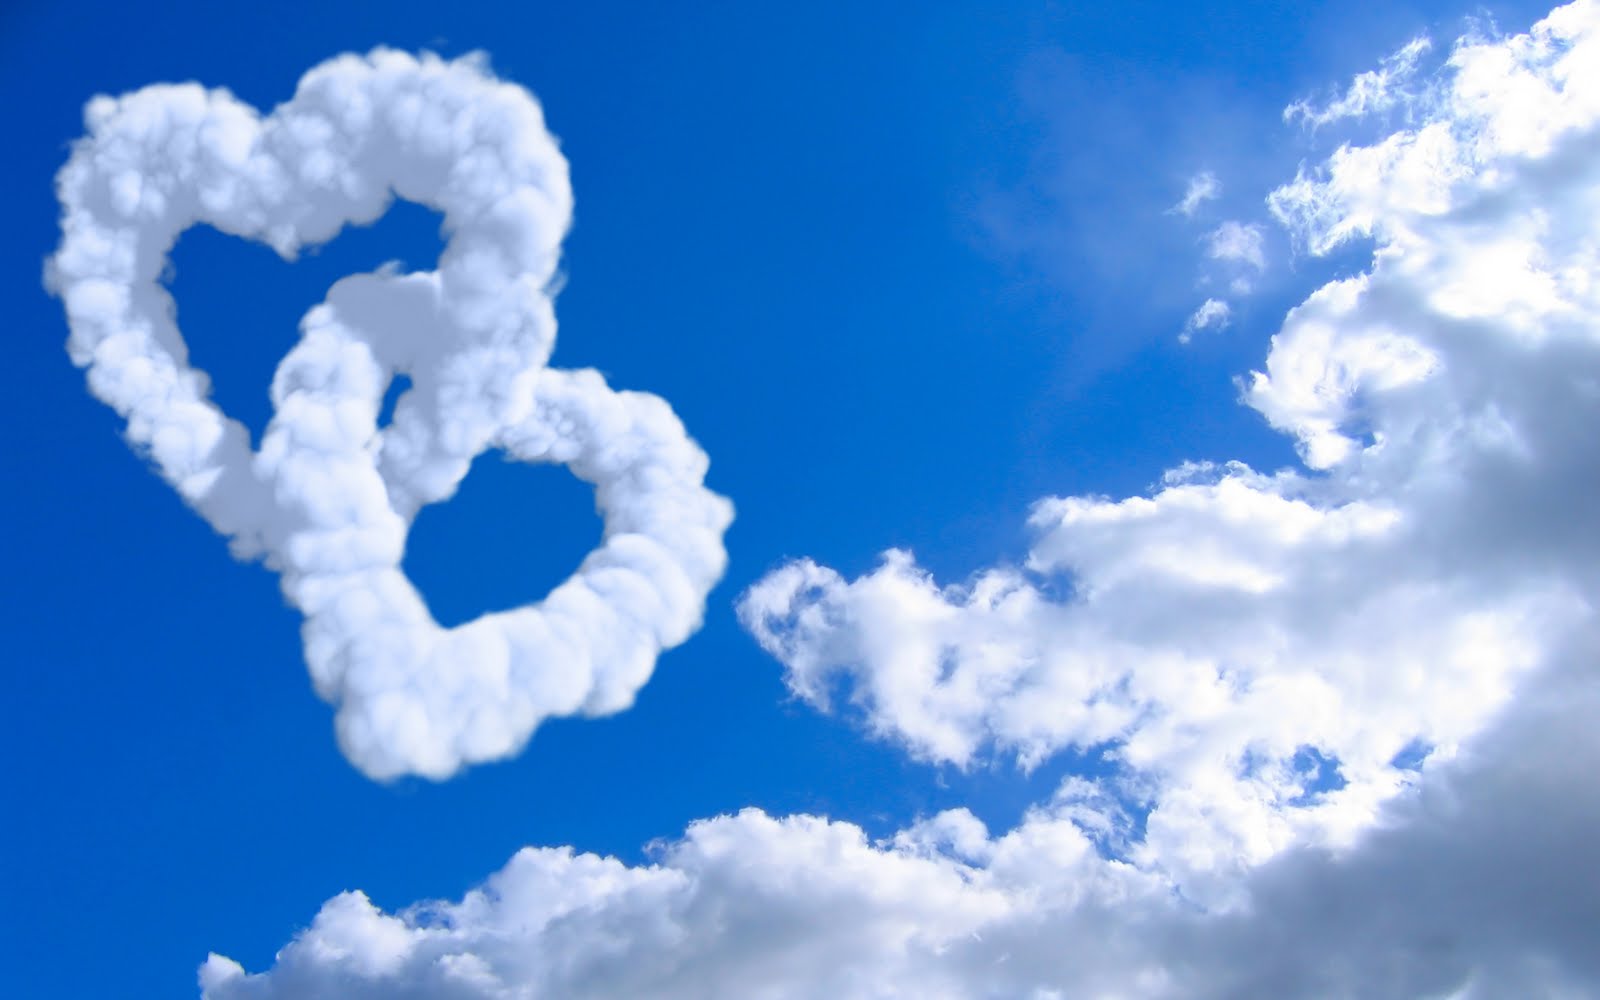 http://3.bp.blogspot.com/-LLswB5wPPUw/TlvdUWnE7TI/AAAAAAAAAis/b5JZ2kvc6js/s1600/Cloud-Endless-Love-Wallpaper.jpg